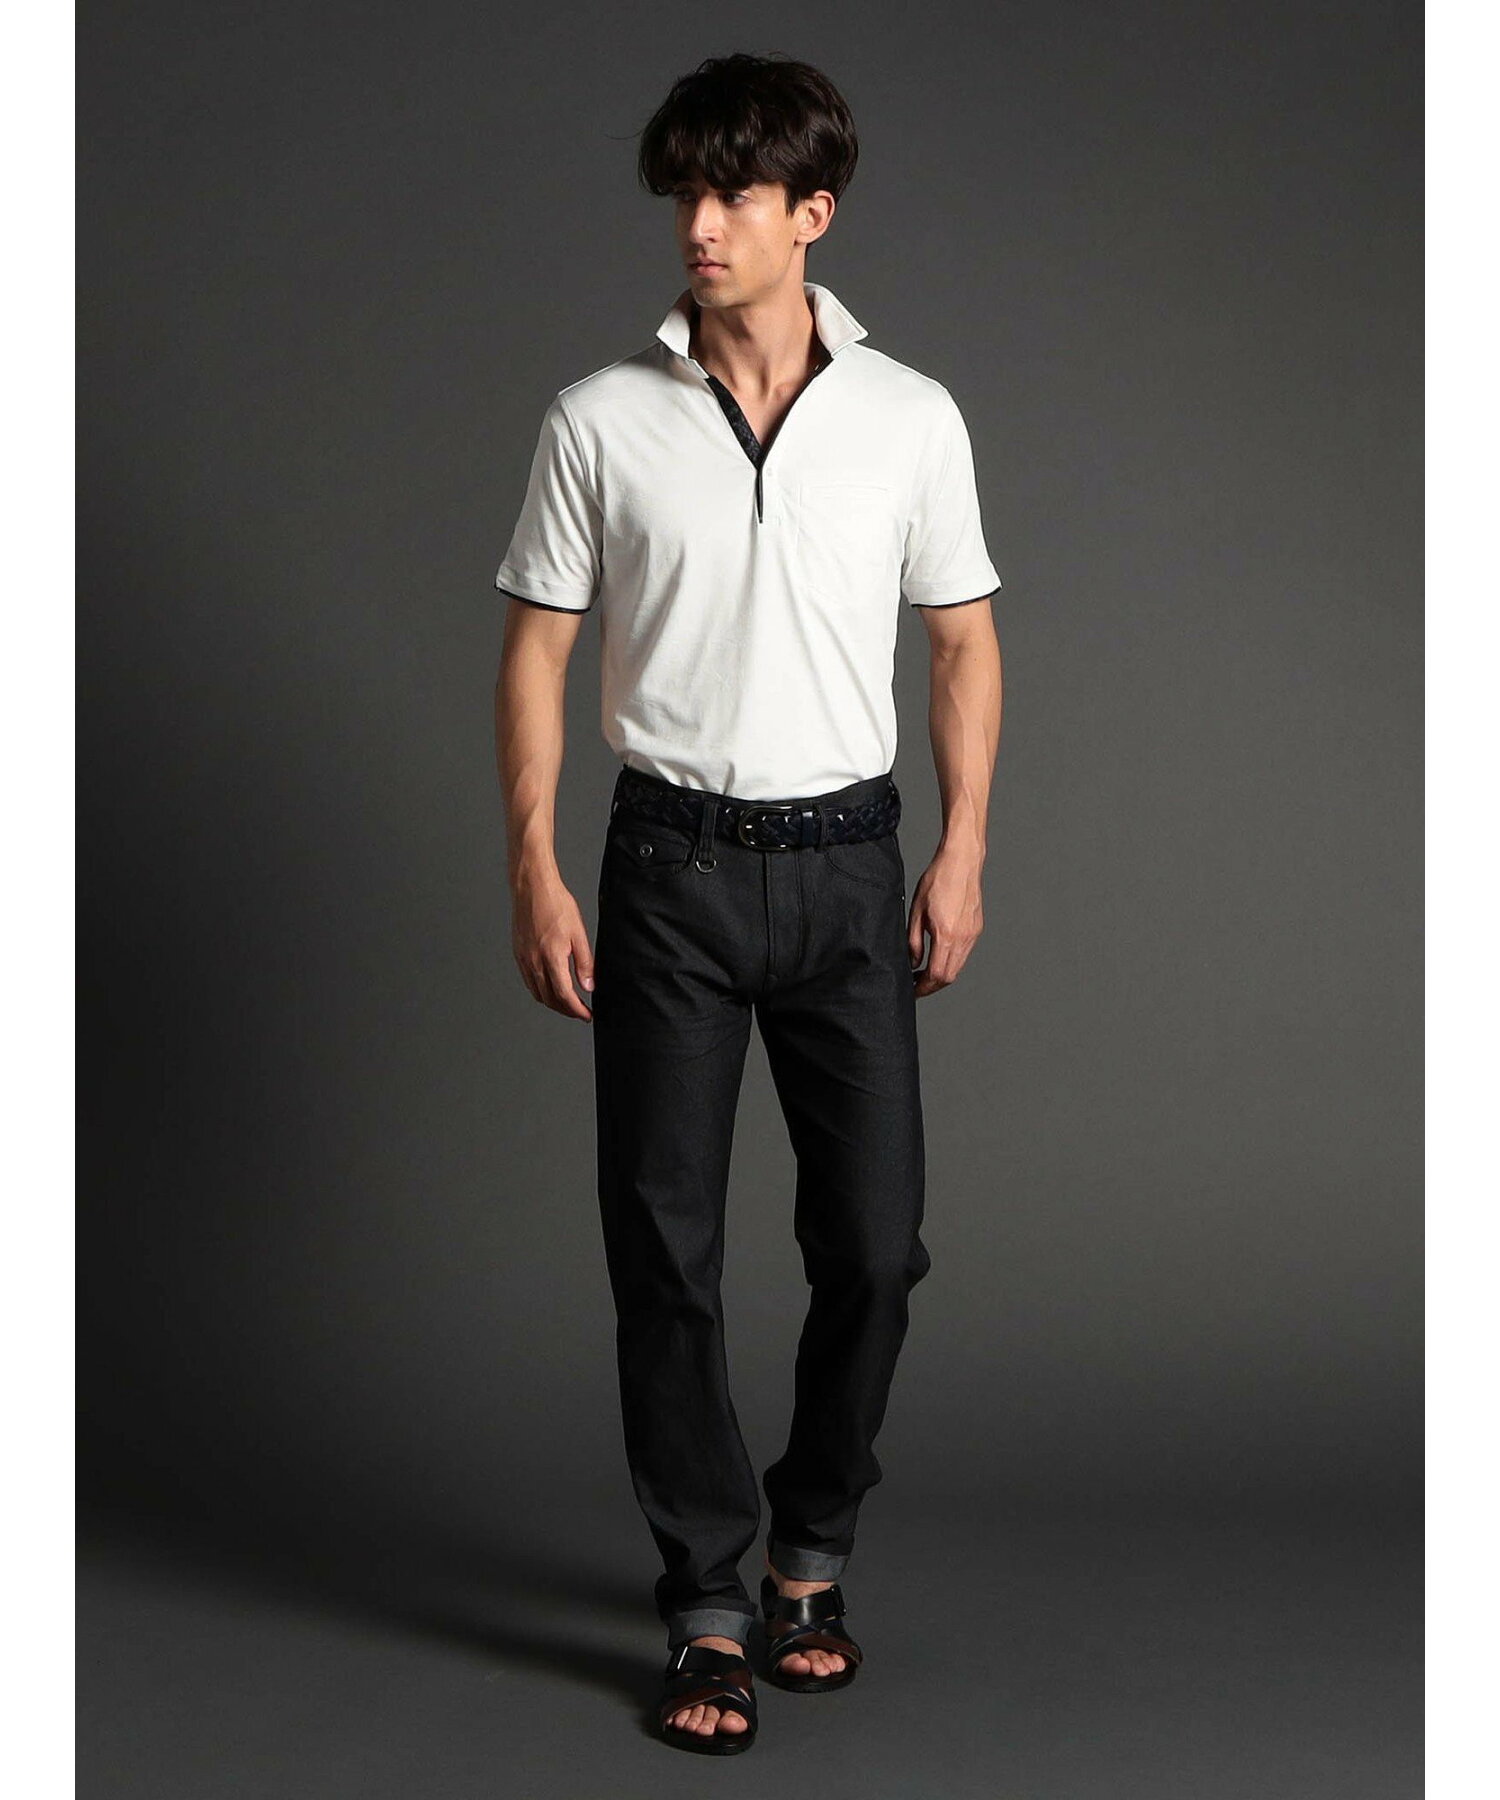 【22年モデル WEB限定再販売】迷彩ジャカード半袖スキッパーポロシャツ